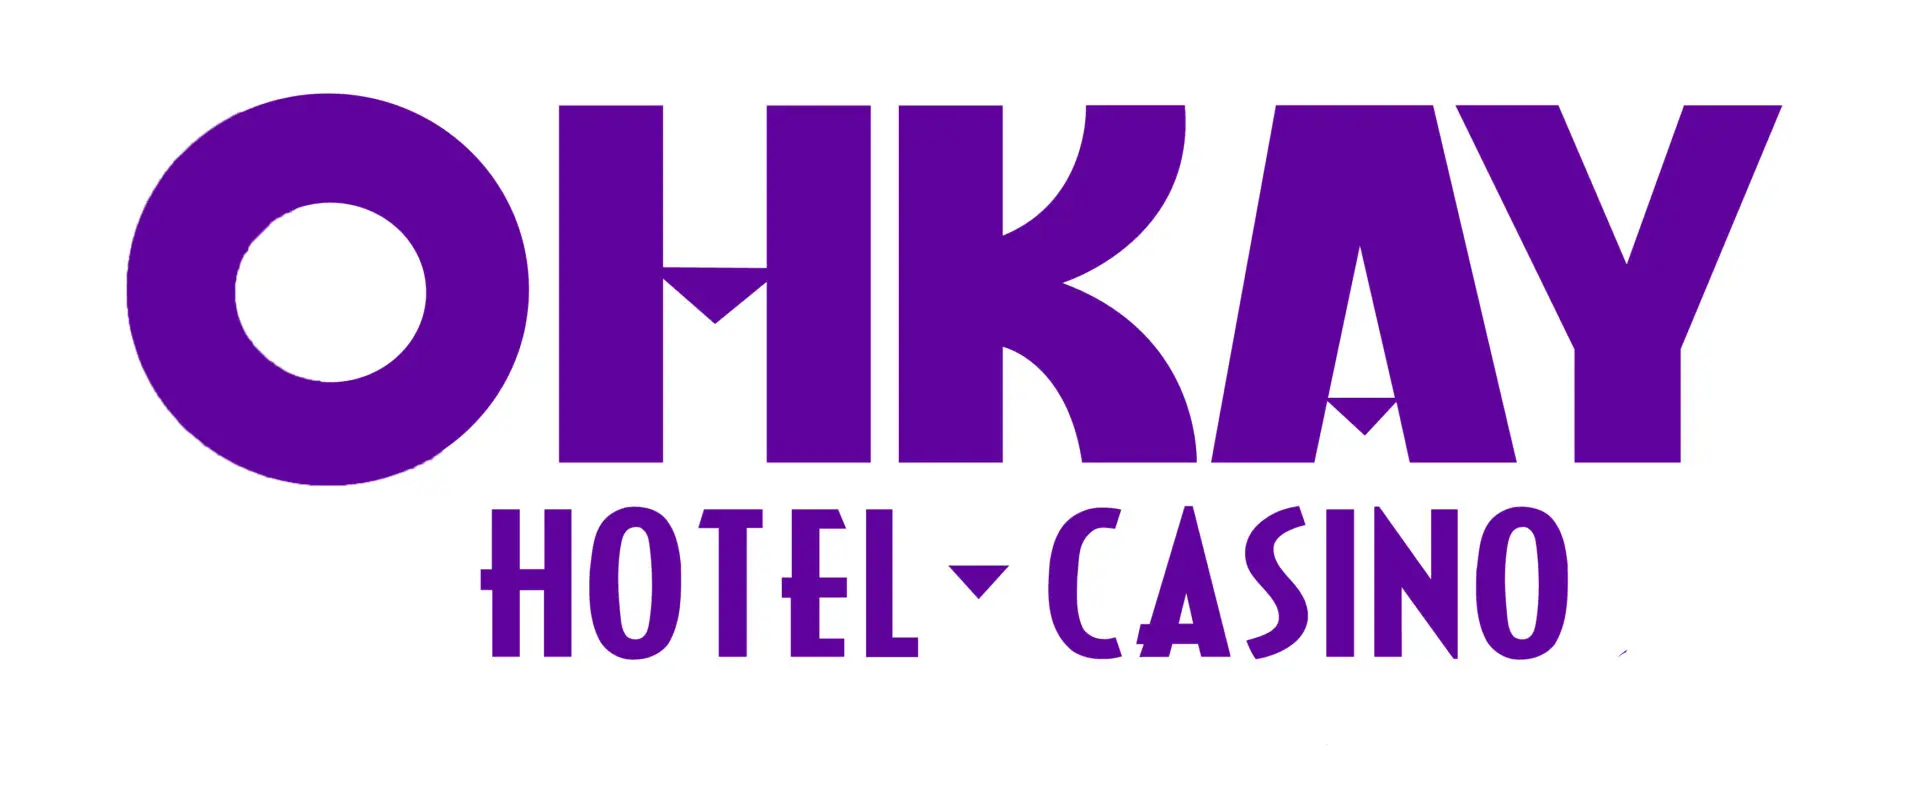 Okay hotel & casino logo.